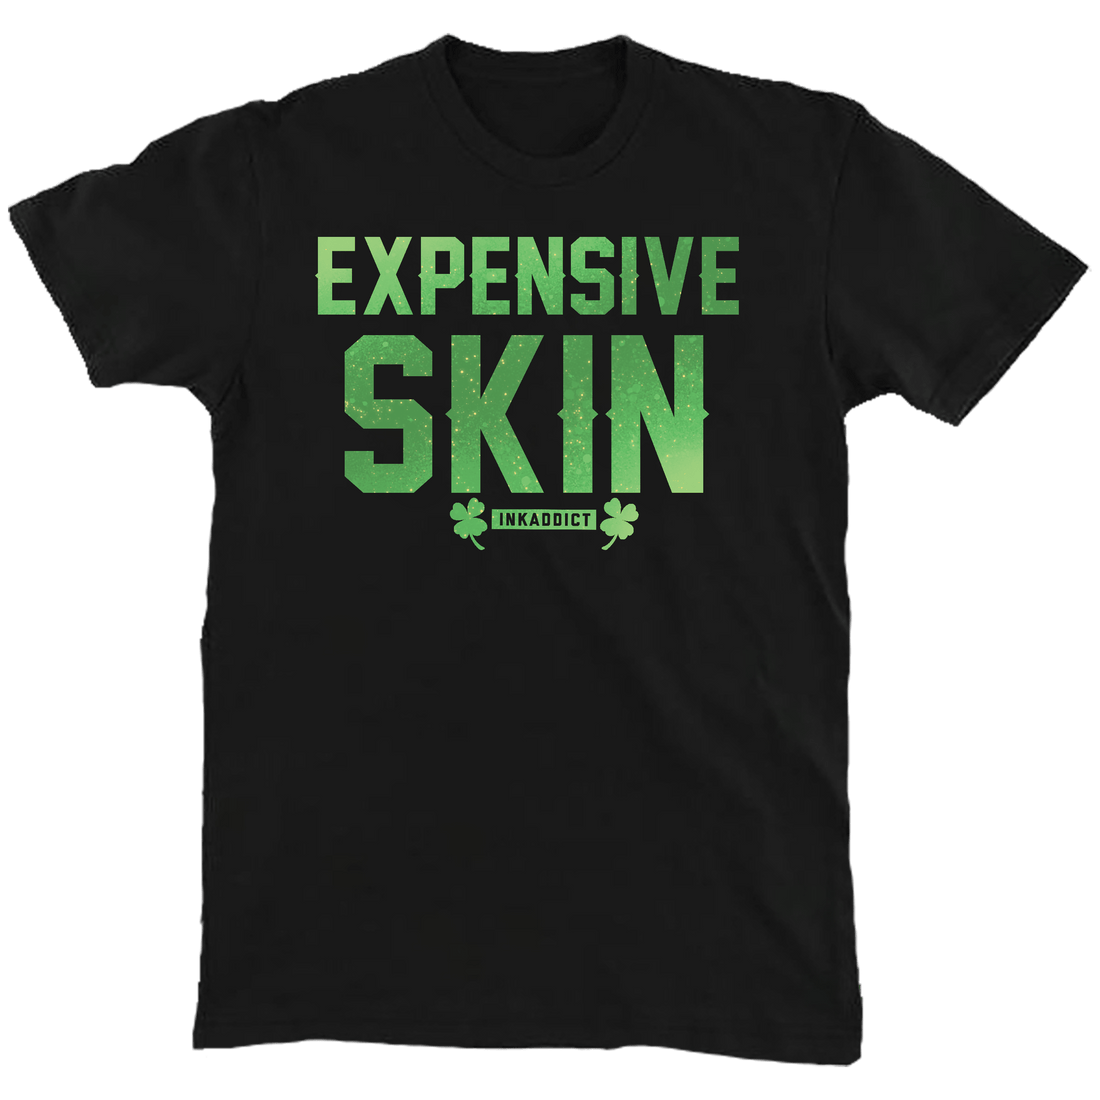 Irish Expensive Skin Unisex Tee